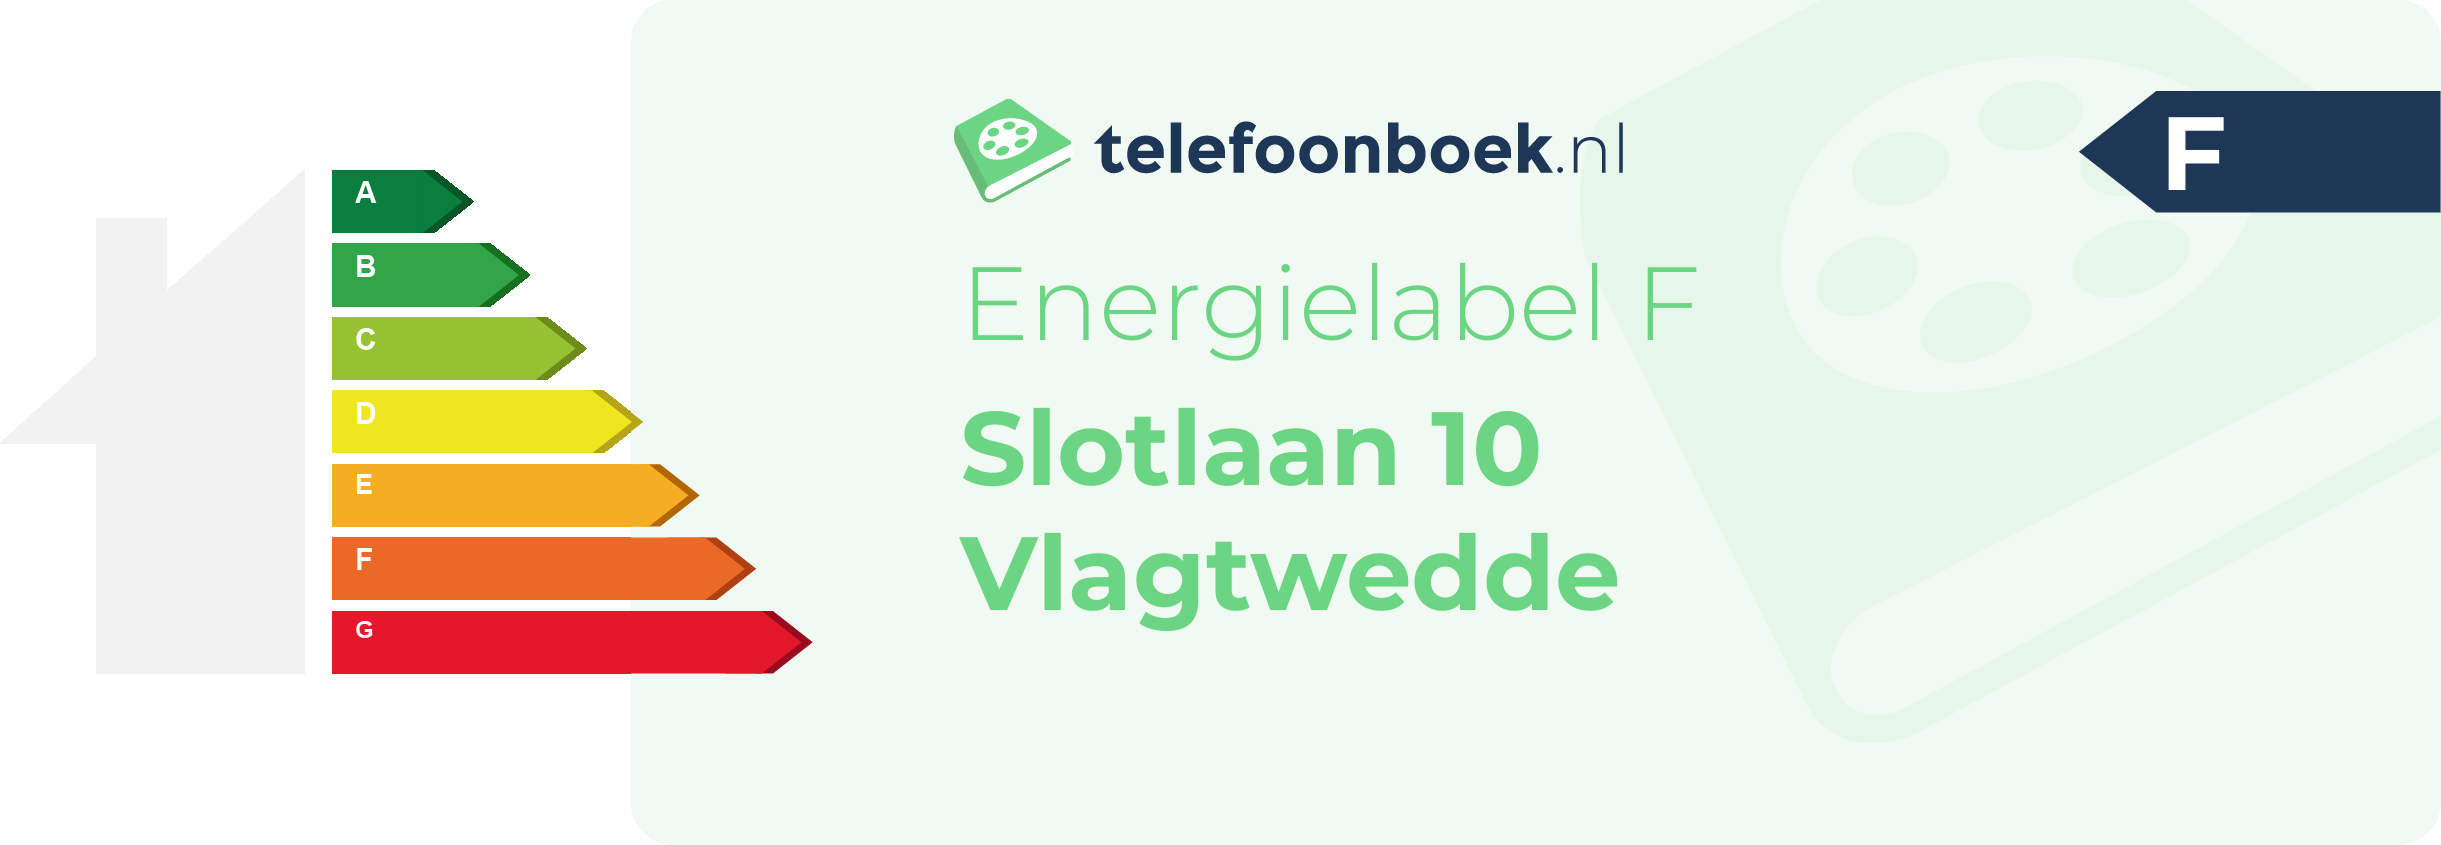 Energielabel Slotlaan 10 Vlagtwedde